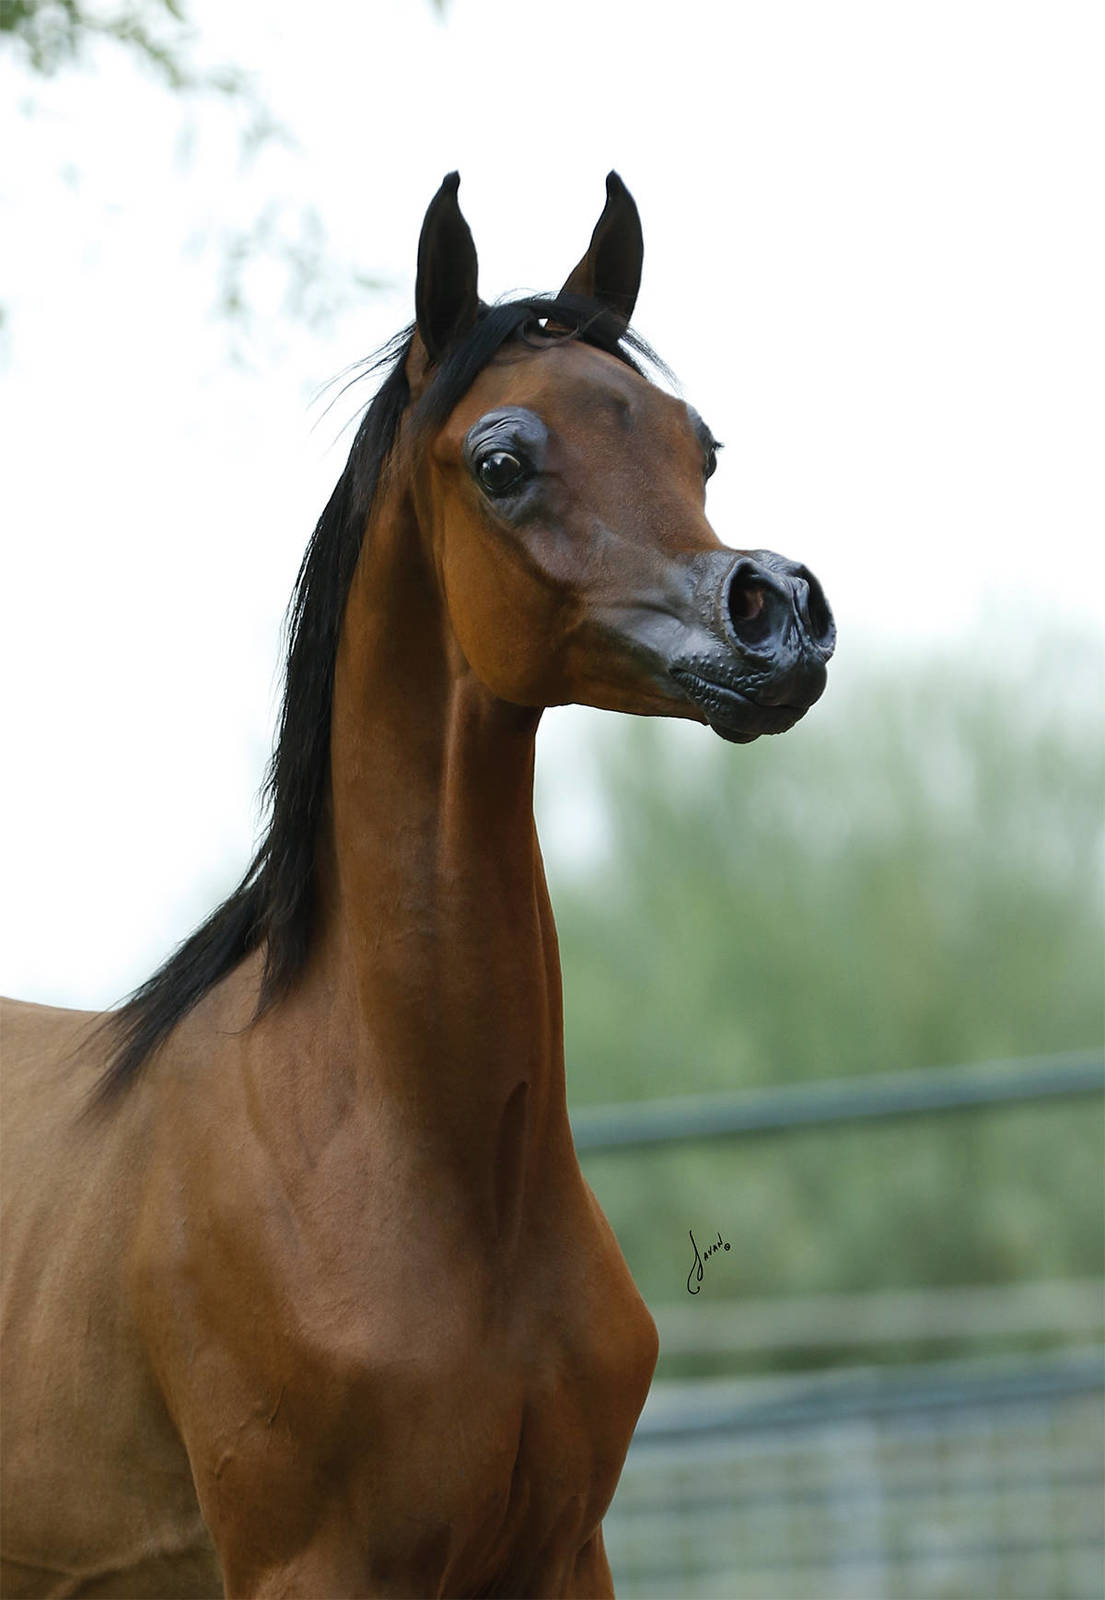 因为狗可以像人类一样用嘴呼吸,但马只能通过鼻子呼吸,我们怀疑这匹马